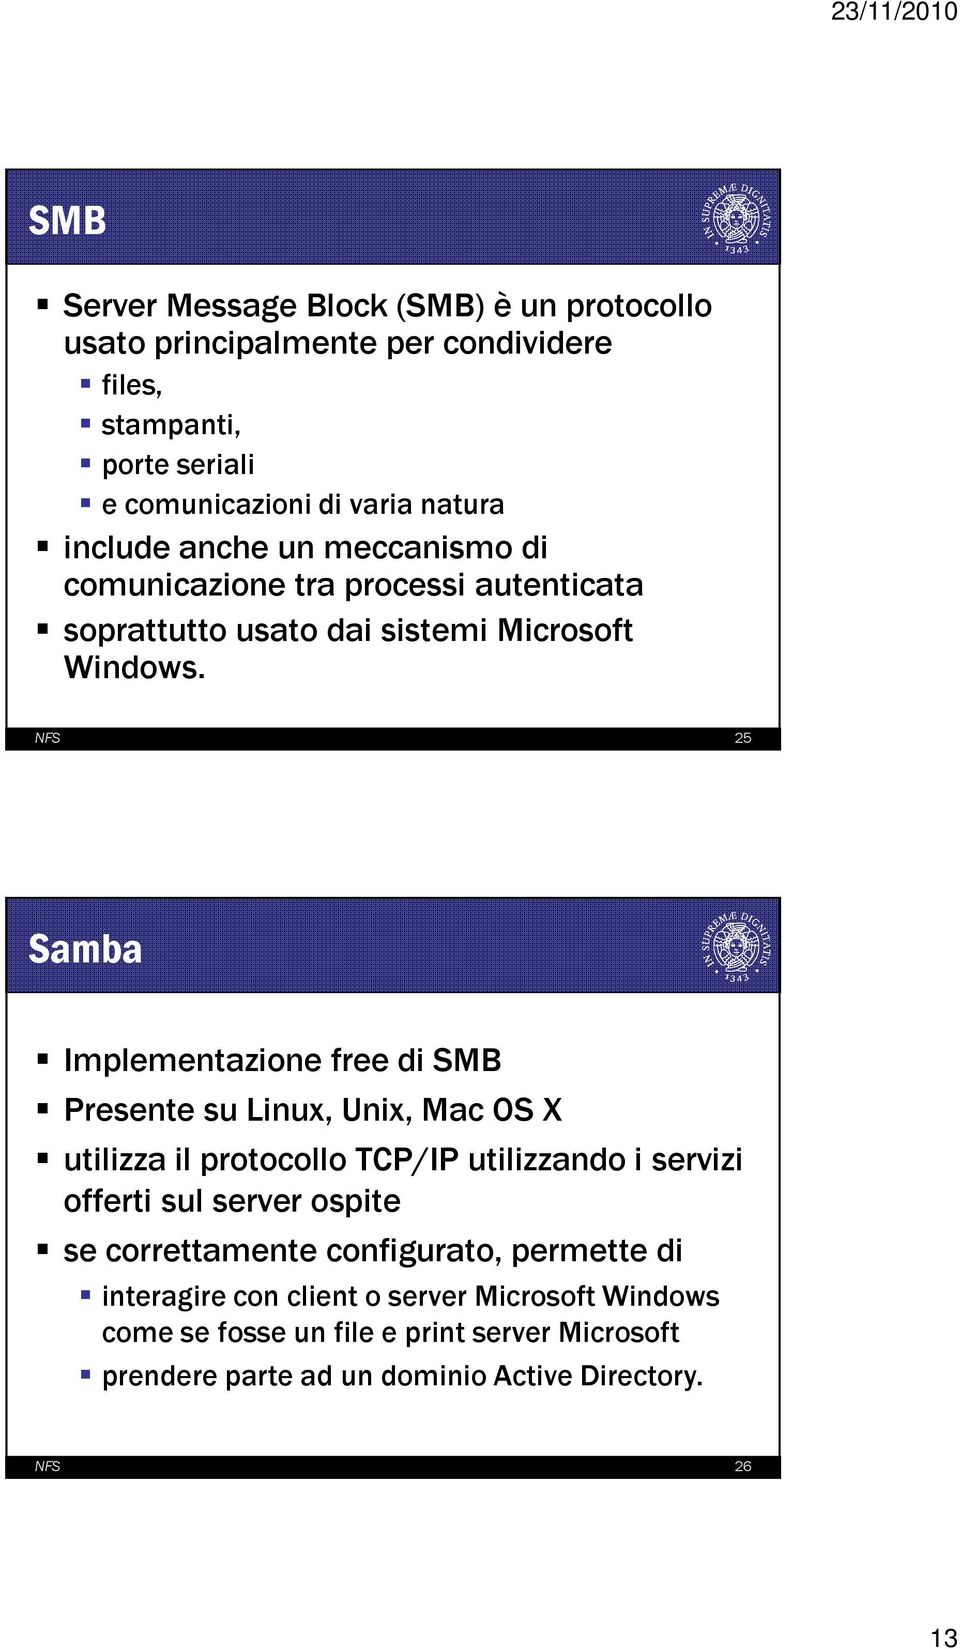 NFS 25 Samba Implementazione free di SMB Presente su Linux, Unix, Mac OS X utilizza il protocollo TCP/IP utilizzando i servizi offerti sul server ospite